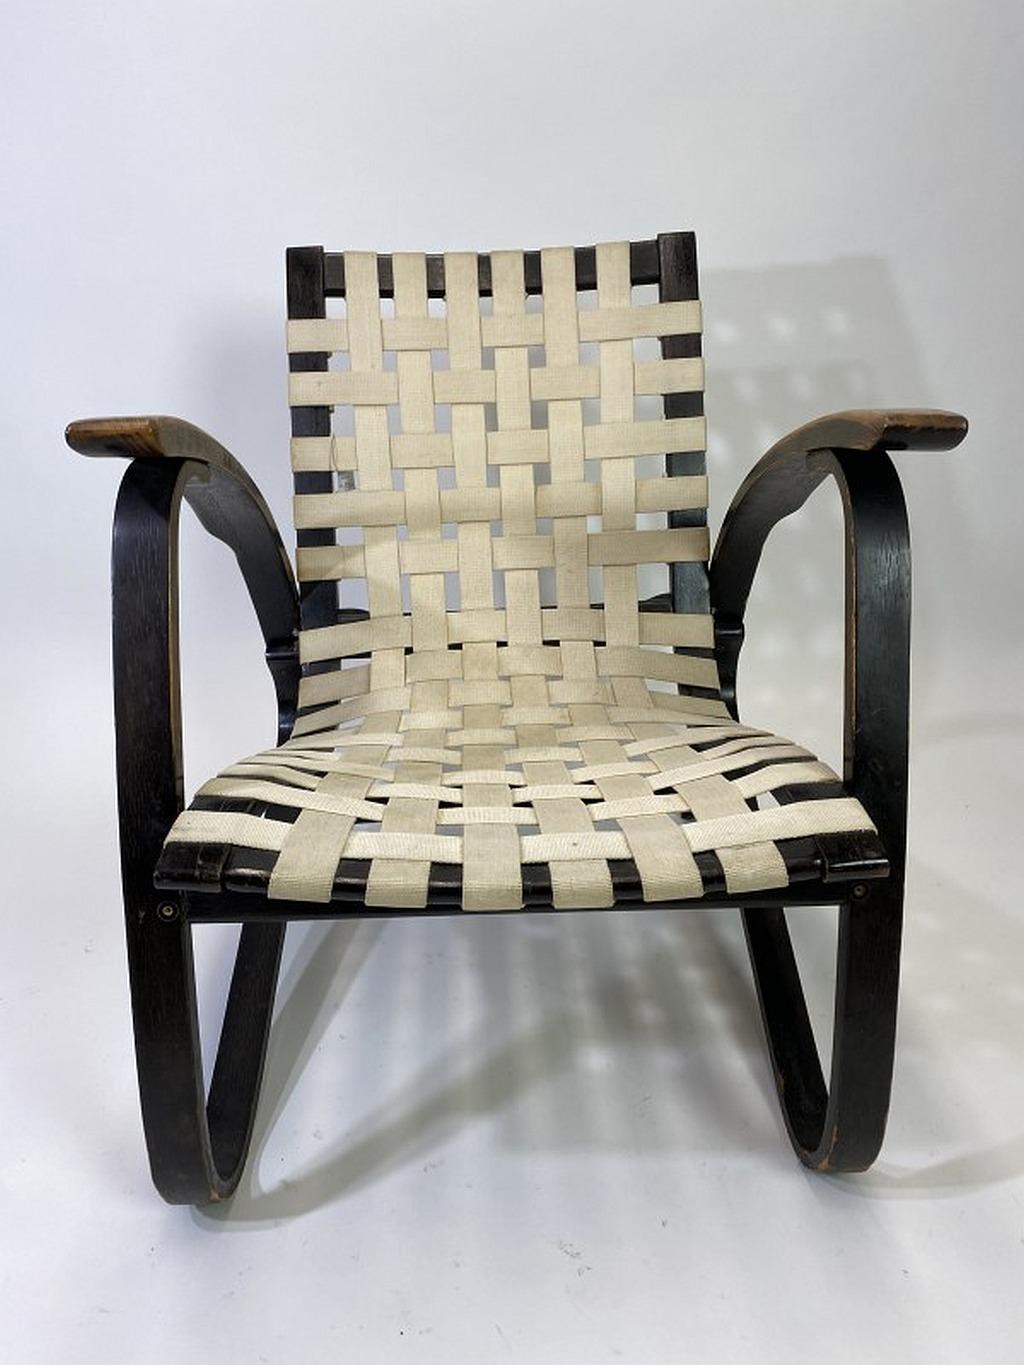 Fauteuil en bois courbé noir, avec sièges en sangle d'origine tissée blanche, conçu par Jan Vanek dans les années 1930. Les fauteuils ont été produits par UP Zavody Brno.